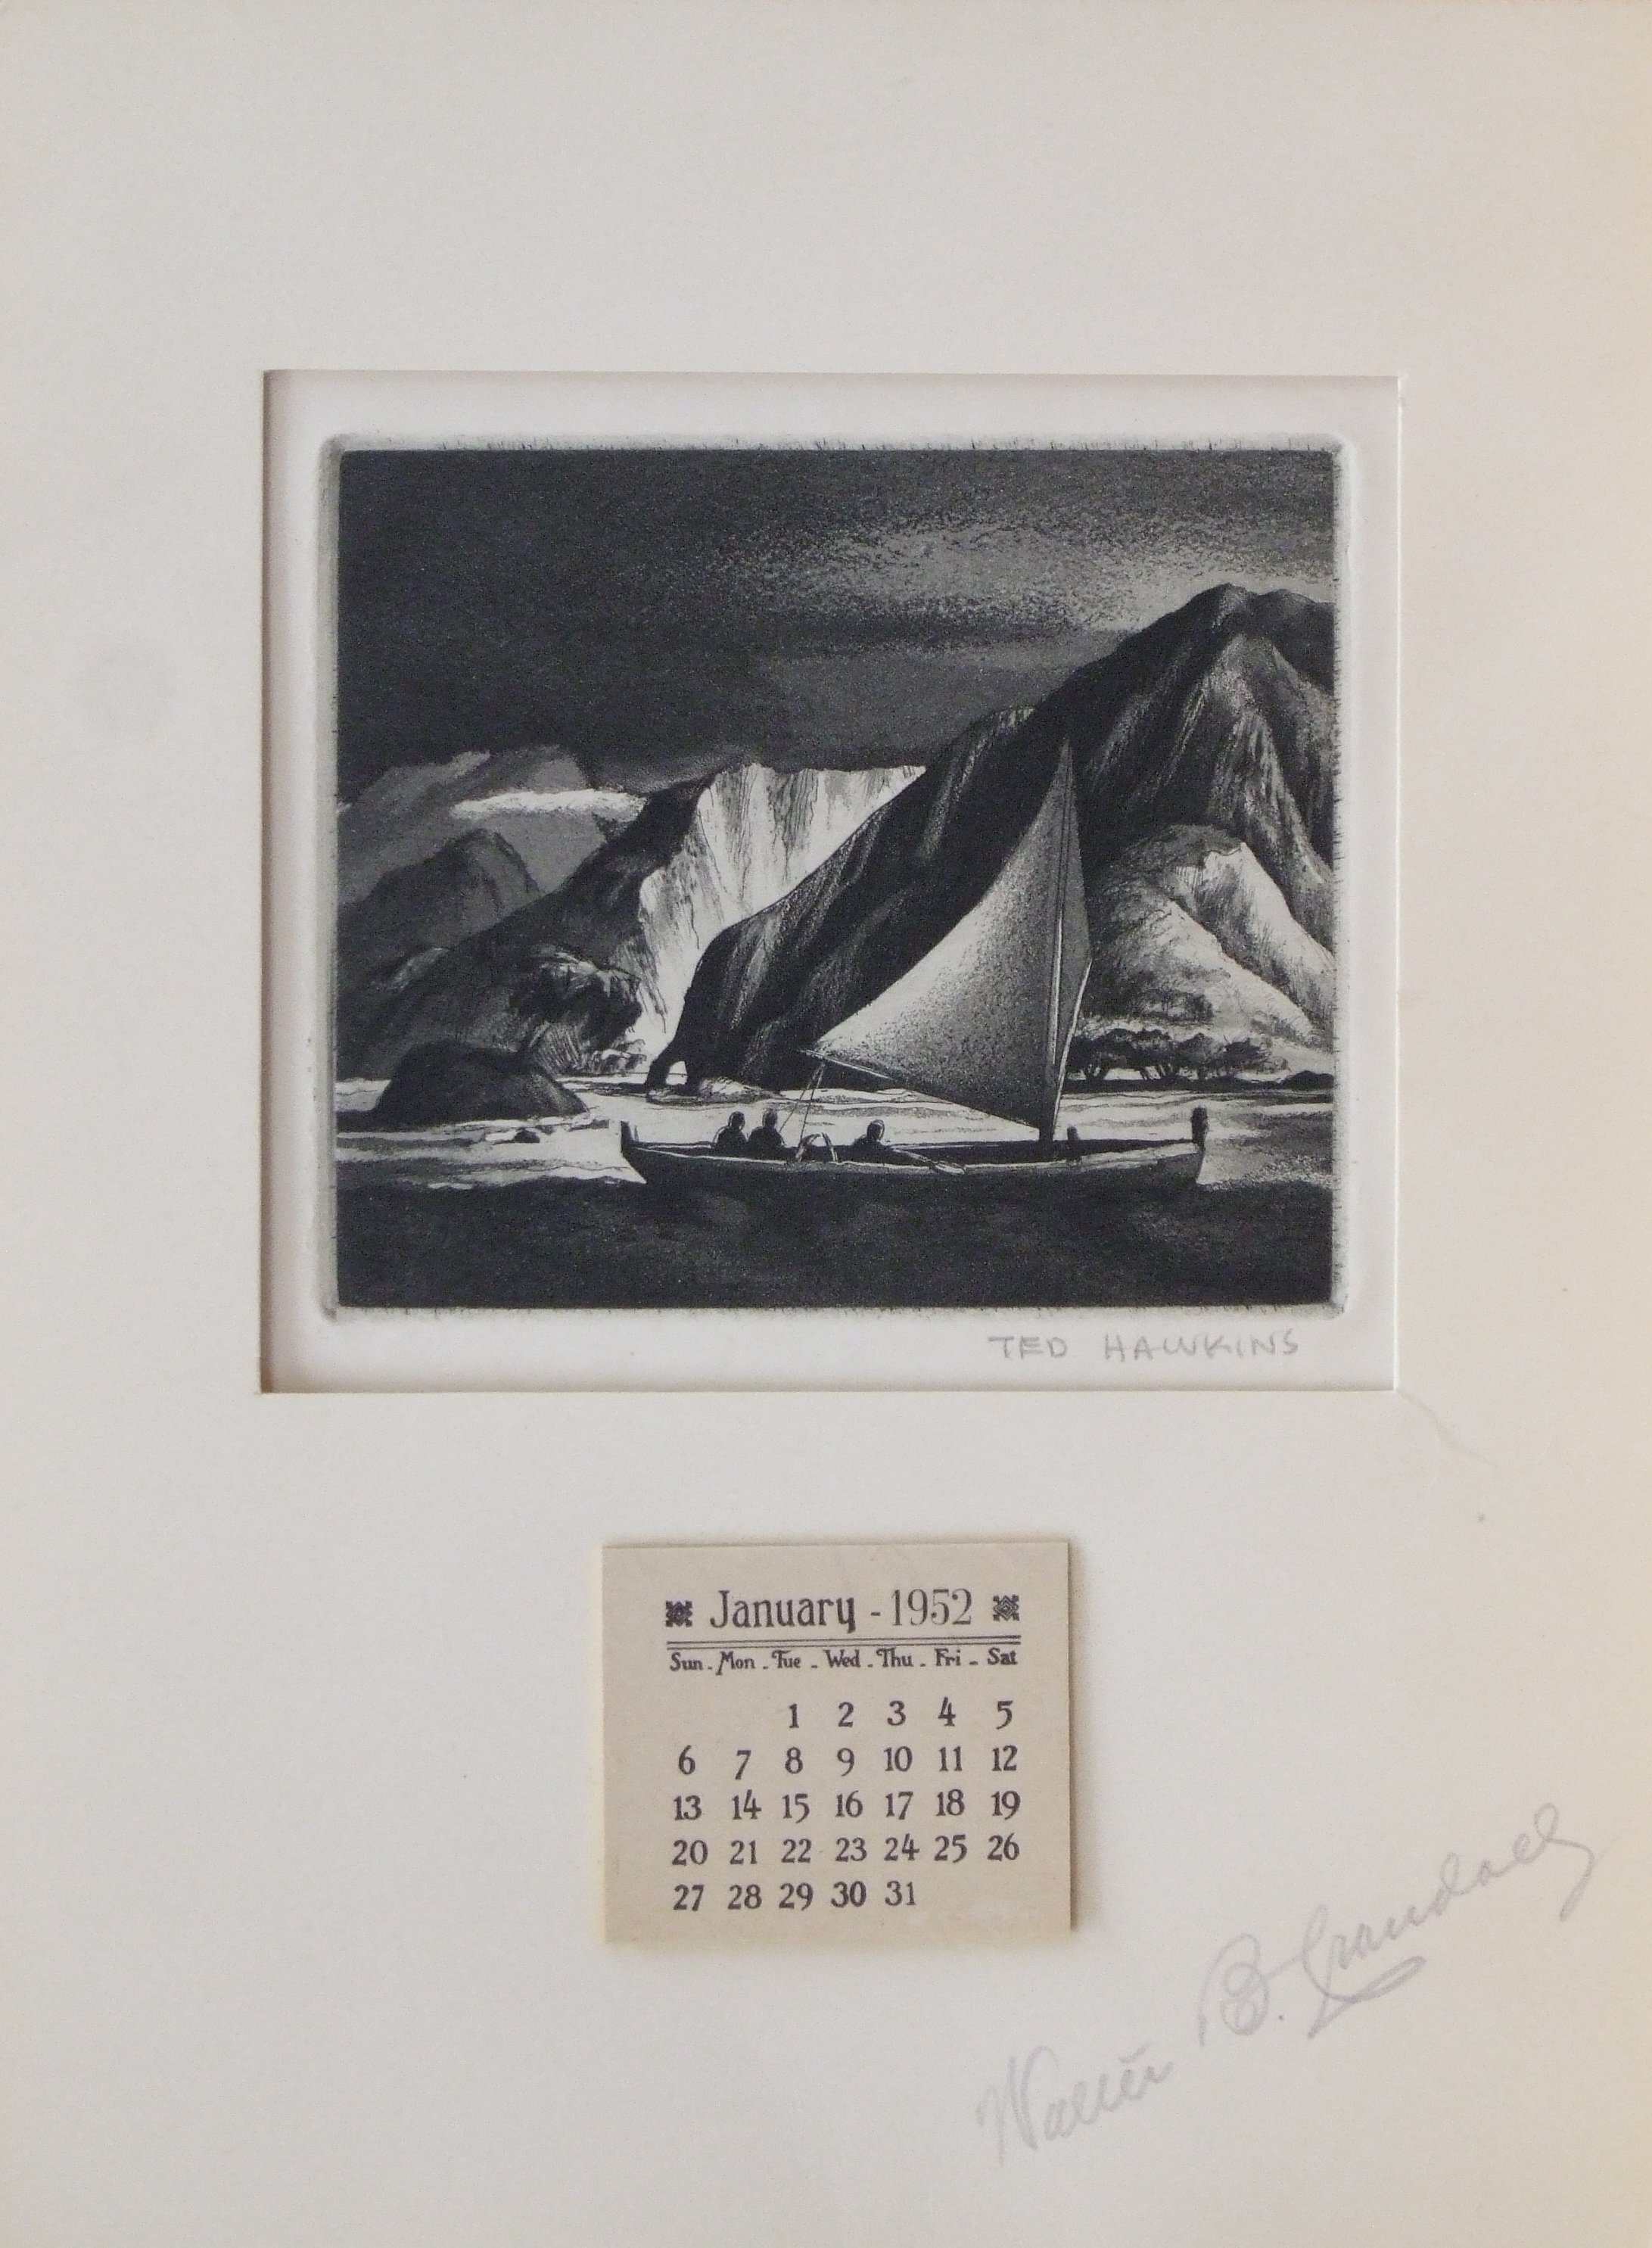 Ted Hawkins, “Untitled (Hawaiian Sailing Canoe)”, aquatint